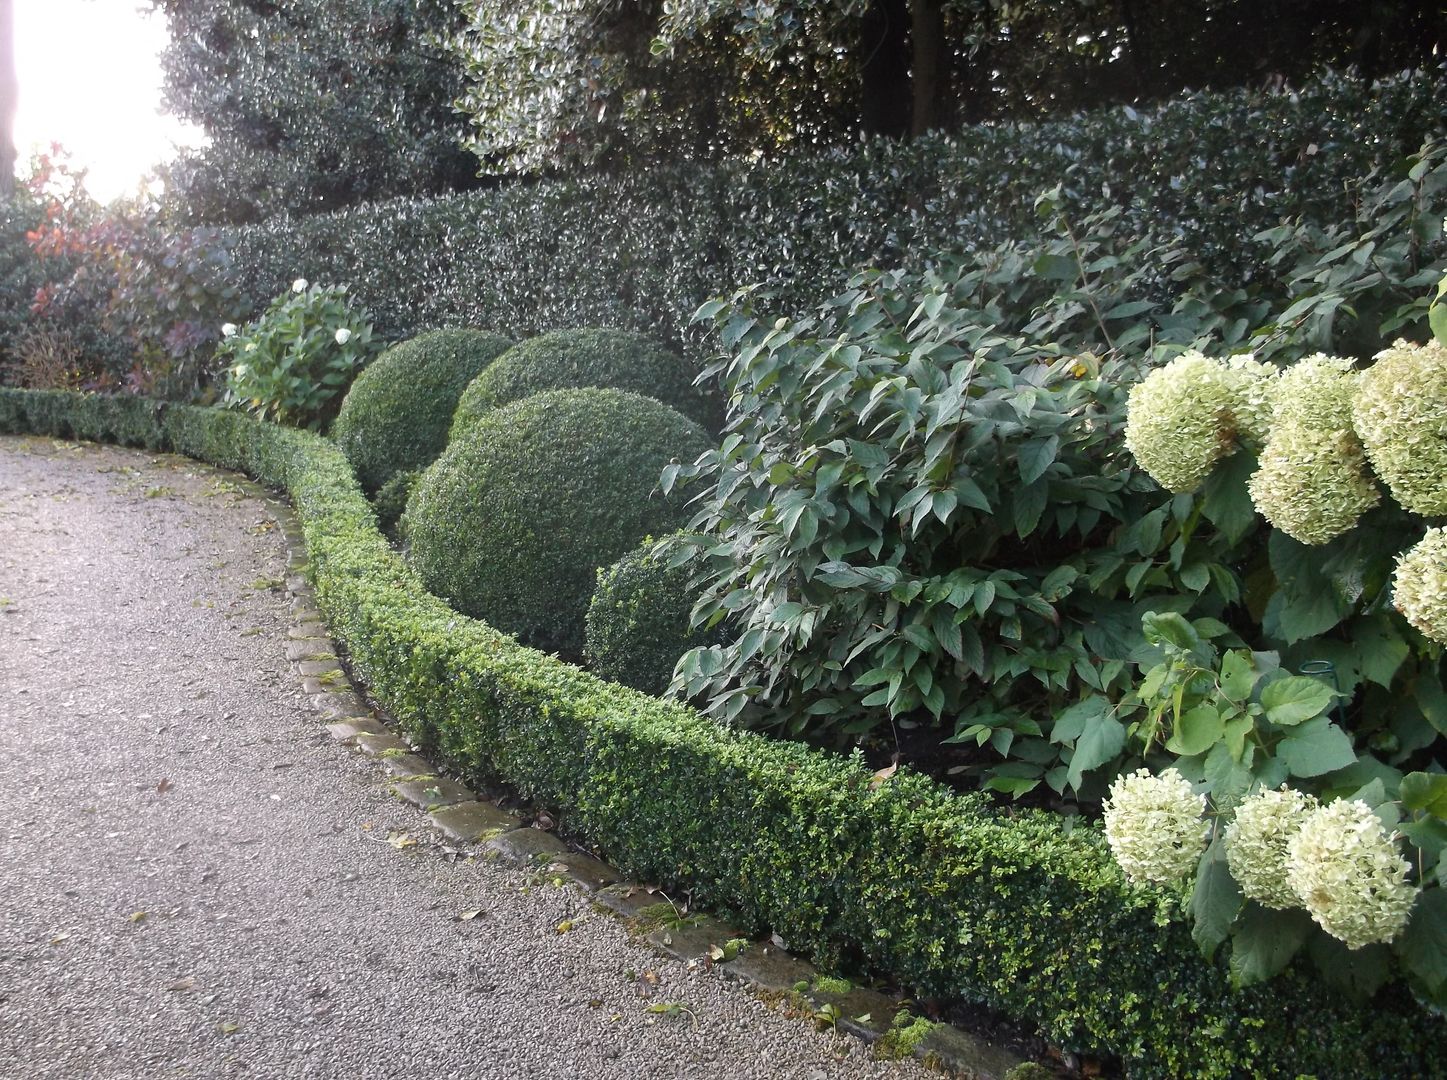 A Bowdon Garden Charlesworth Design Jardines clásicos hydrangea,frontgarden,bowdon,bowdongarden,classicgarden,boxballs,topiary